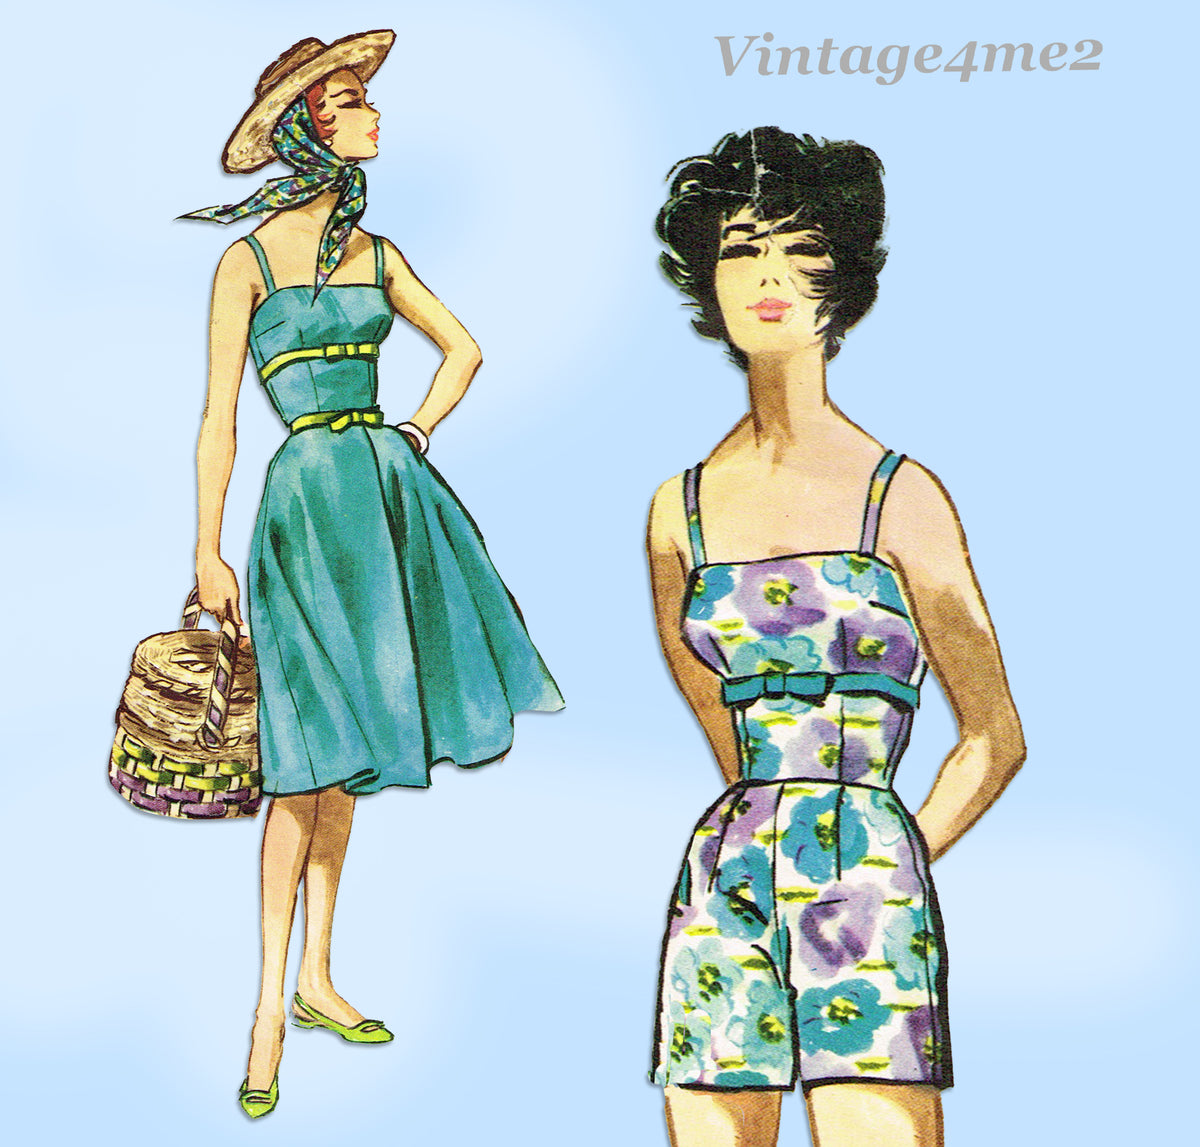 McCall's Pattern 4256 - Size Y (Xsm, Sml, Med)  Designers de moda, Padrões  de costura vintage, Desenhos de roupas